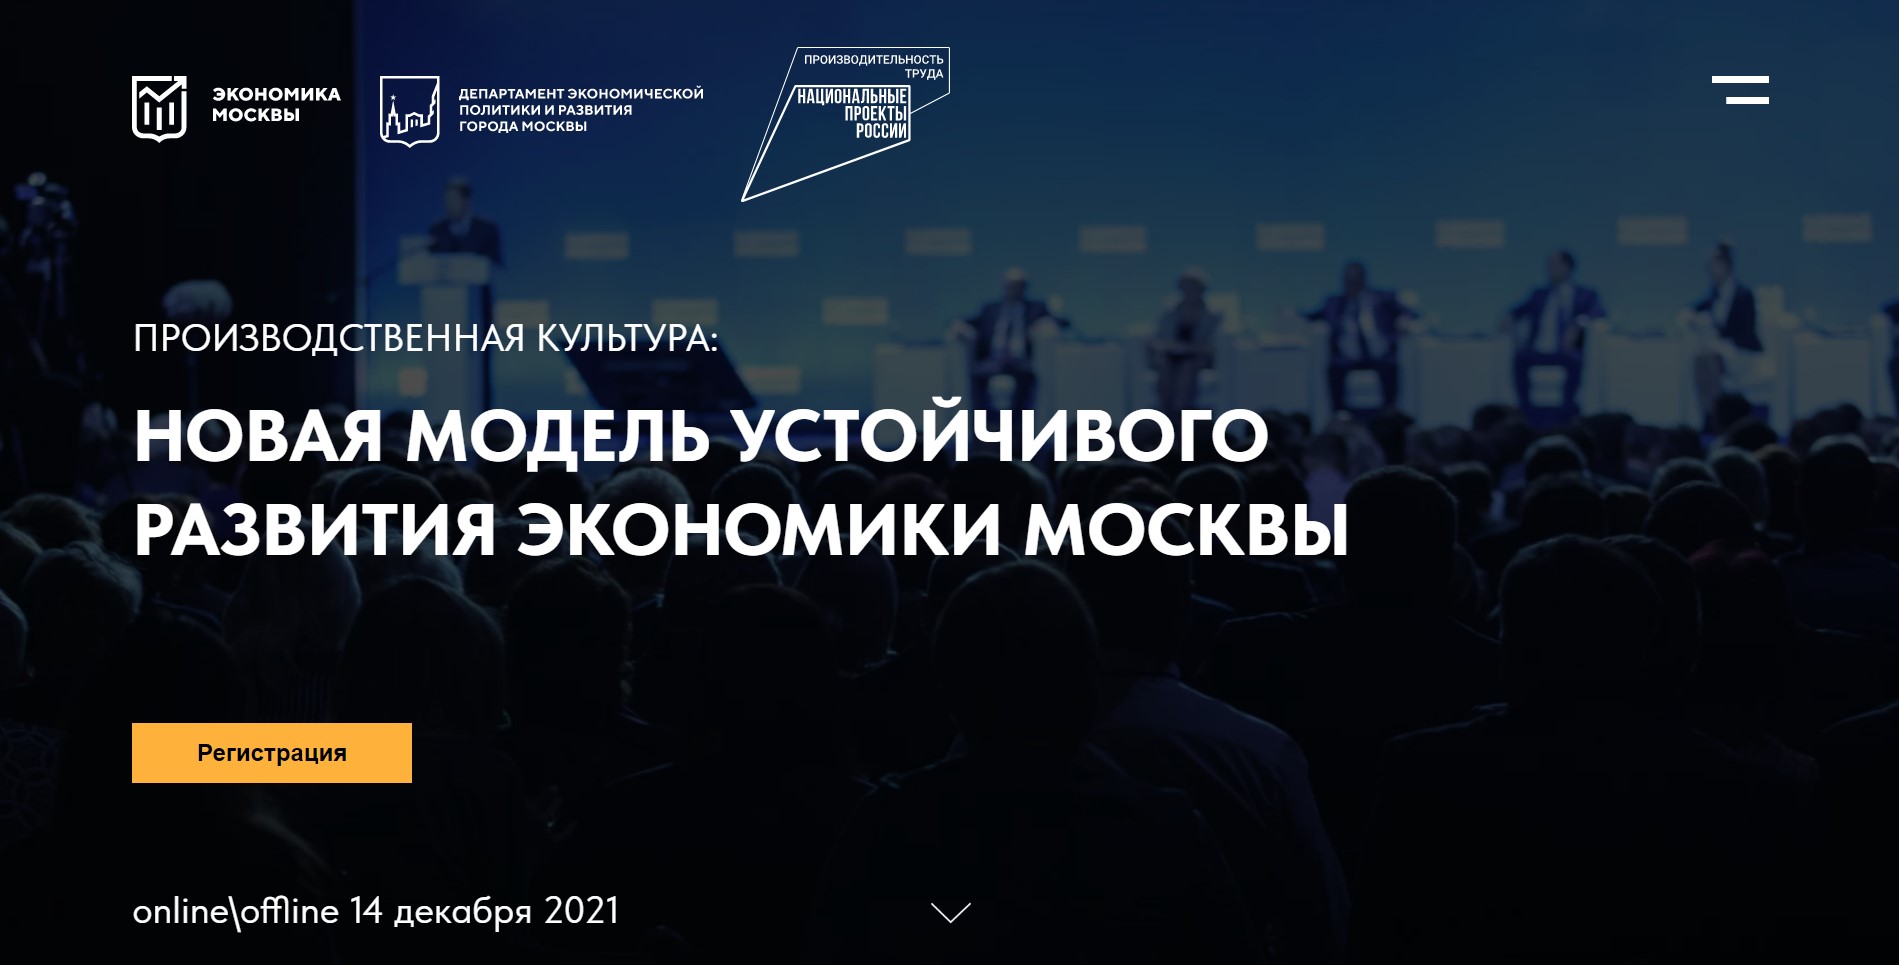 бизнес-конференция «Производственная культура: новая модель устойчивого развития экономики Москвы».